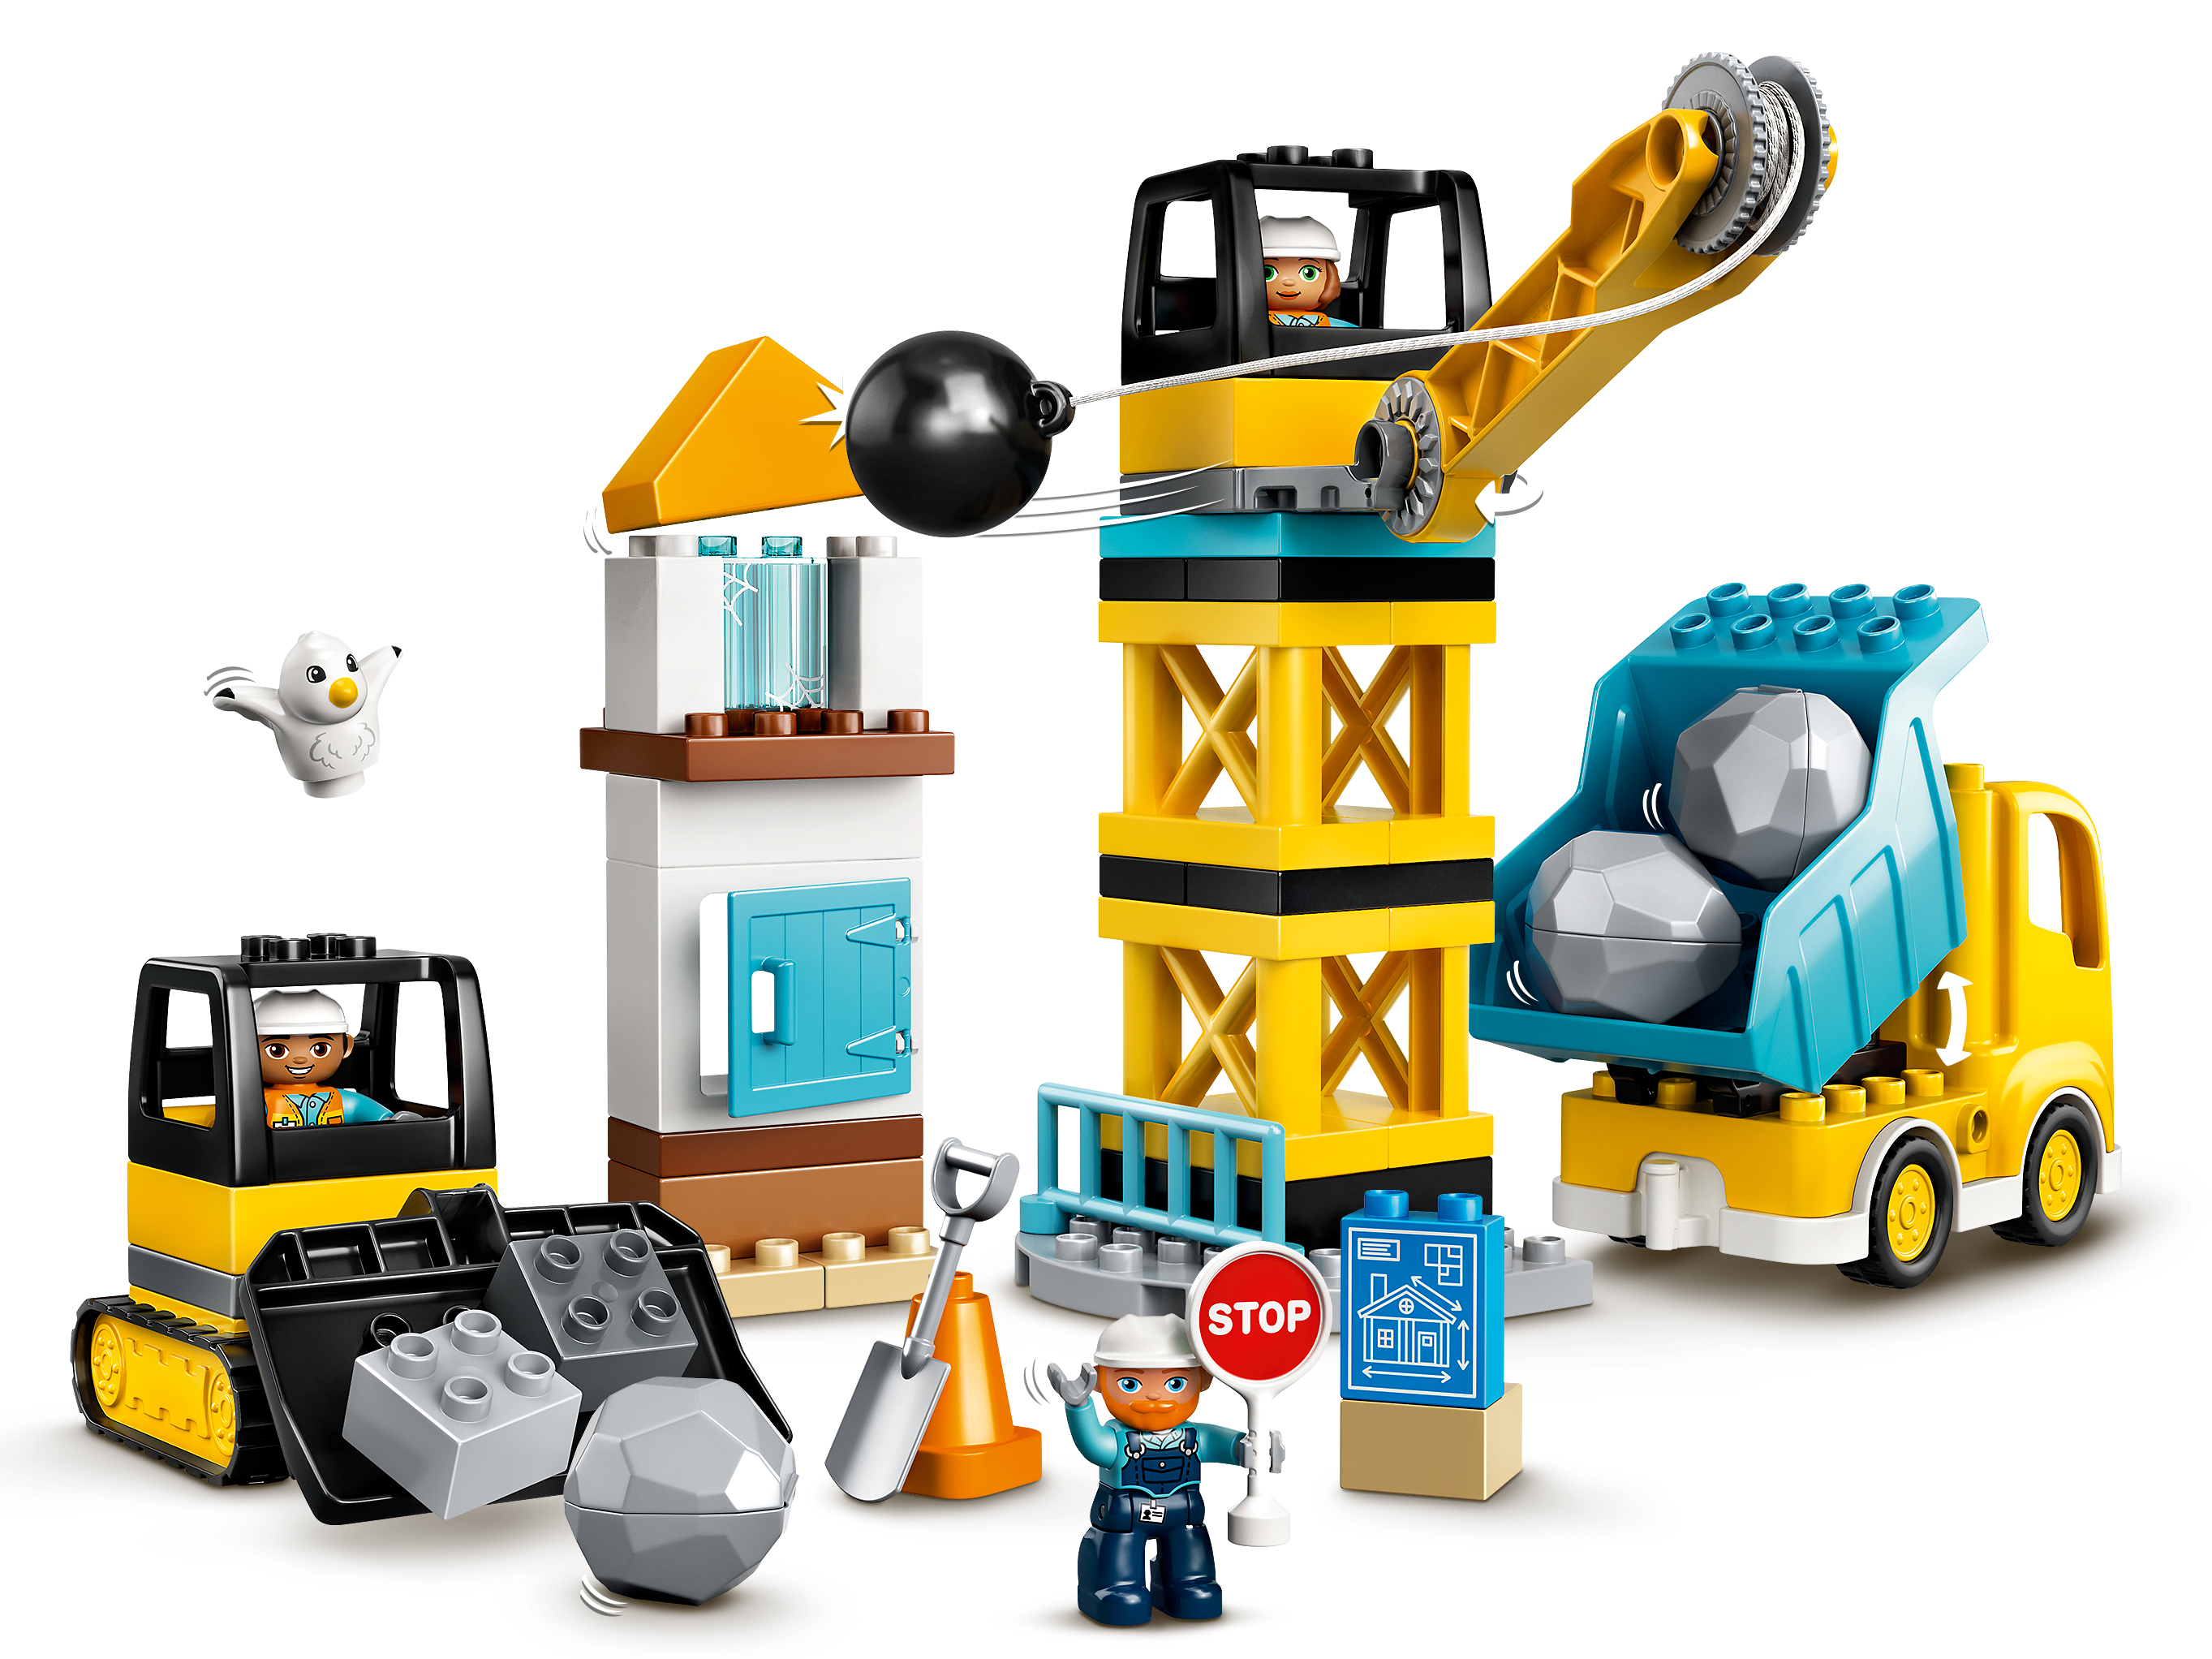 Le camion de construction et la grue à boule de destruction 60391 | City |  Boutique LEGO® officielle CA